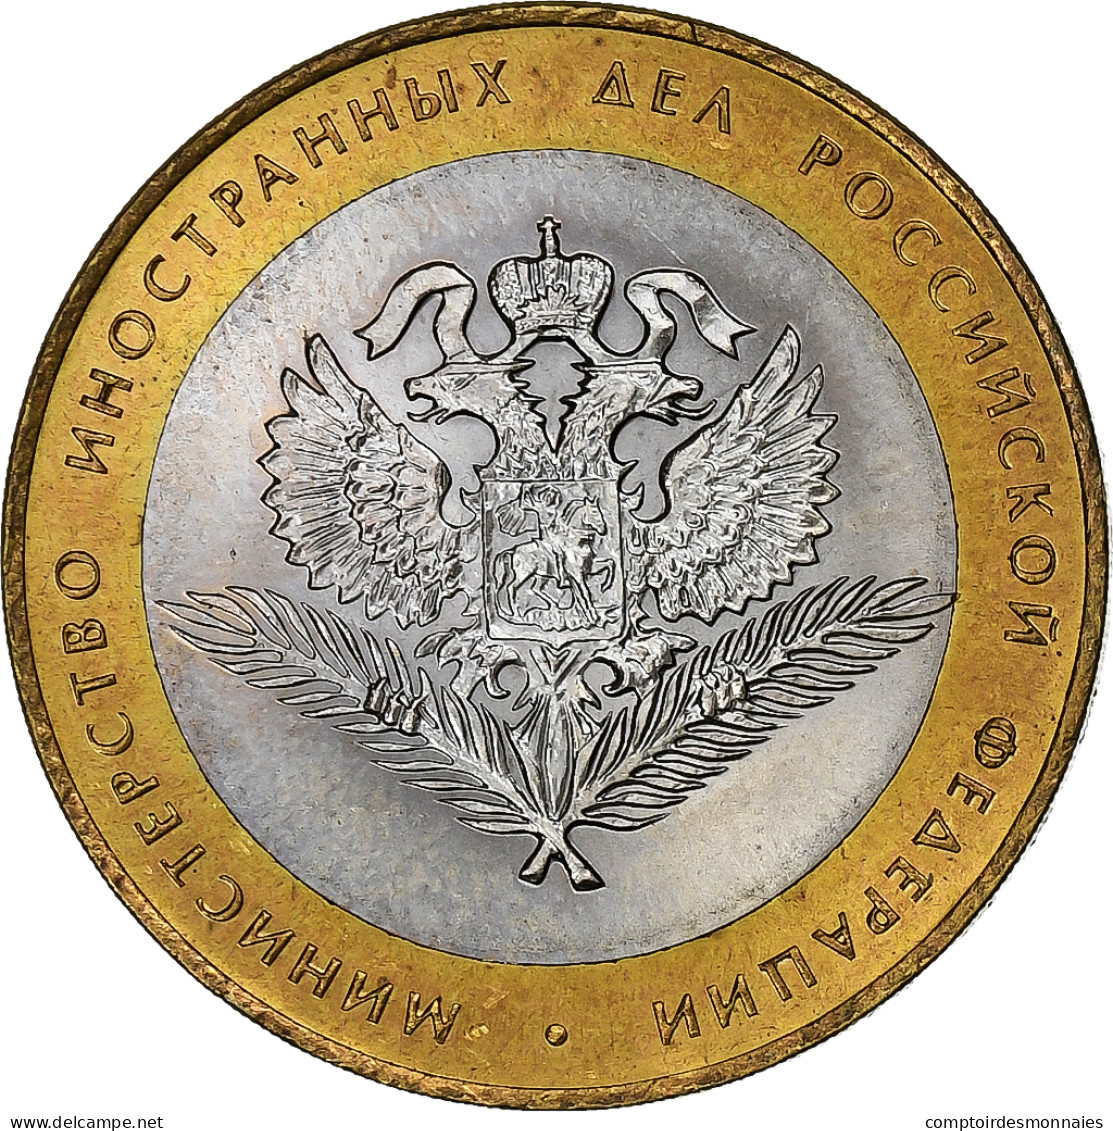 Russie, 10 Roubles, 2002, St. Petersburg, Bimétallique, SUP, KM:751 - Russie